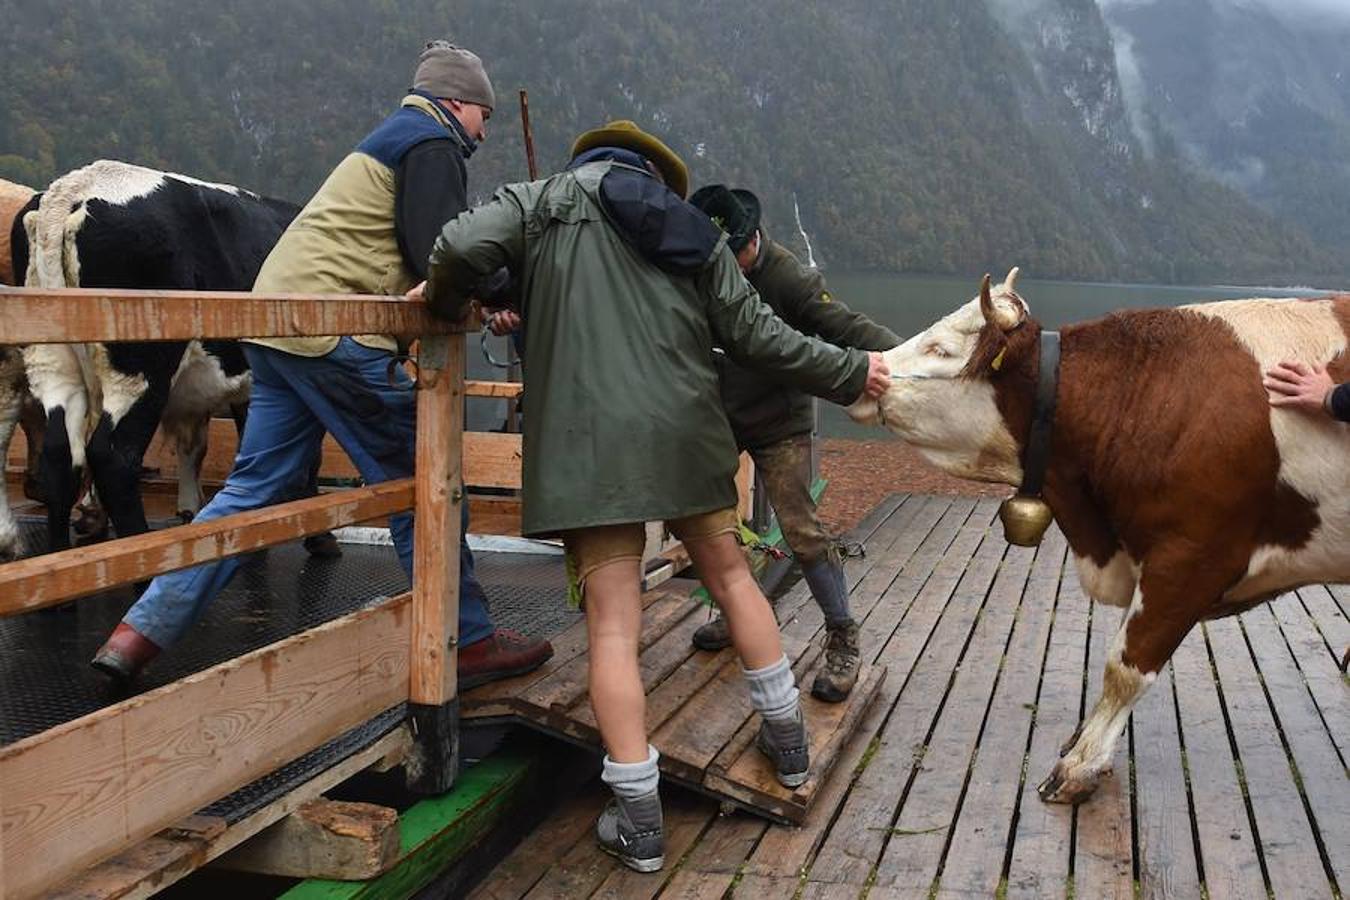 Tras 100 días en los amplios prados de verano del lago de Koegnisse, norte de Baviera, alrededor de 30 ganados vuelven a casa. Los agricultores bárbaros deben trasladar su ganado a un valle estrecho al que solo se puede acceder mediante barco.